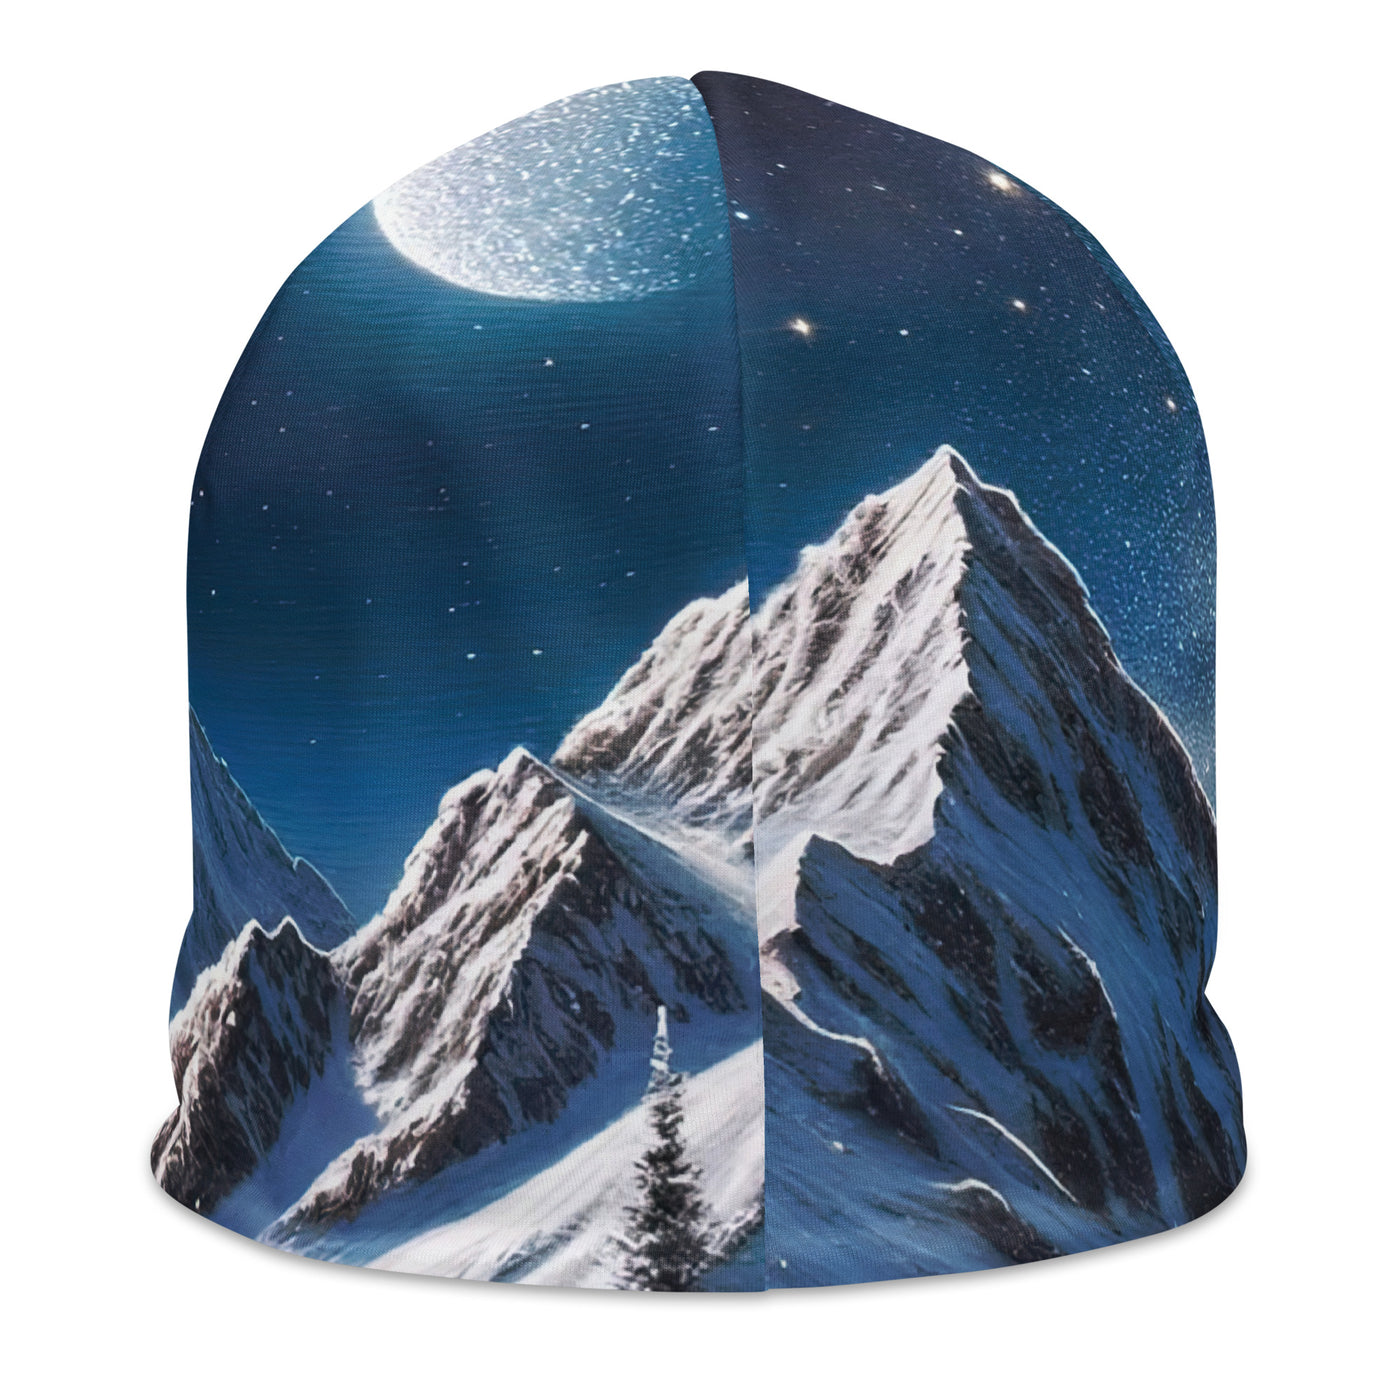 Sternennacht und Eisbär: Acrylgemälde mit Milchstraße, Alpen und schneebedeckte Gipfel - Beanie (All-Over Print) camping xxx yyy zzz